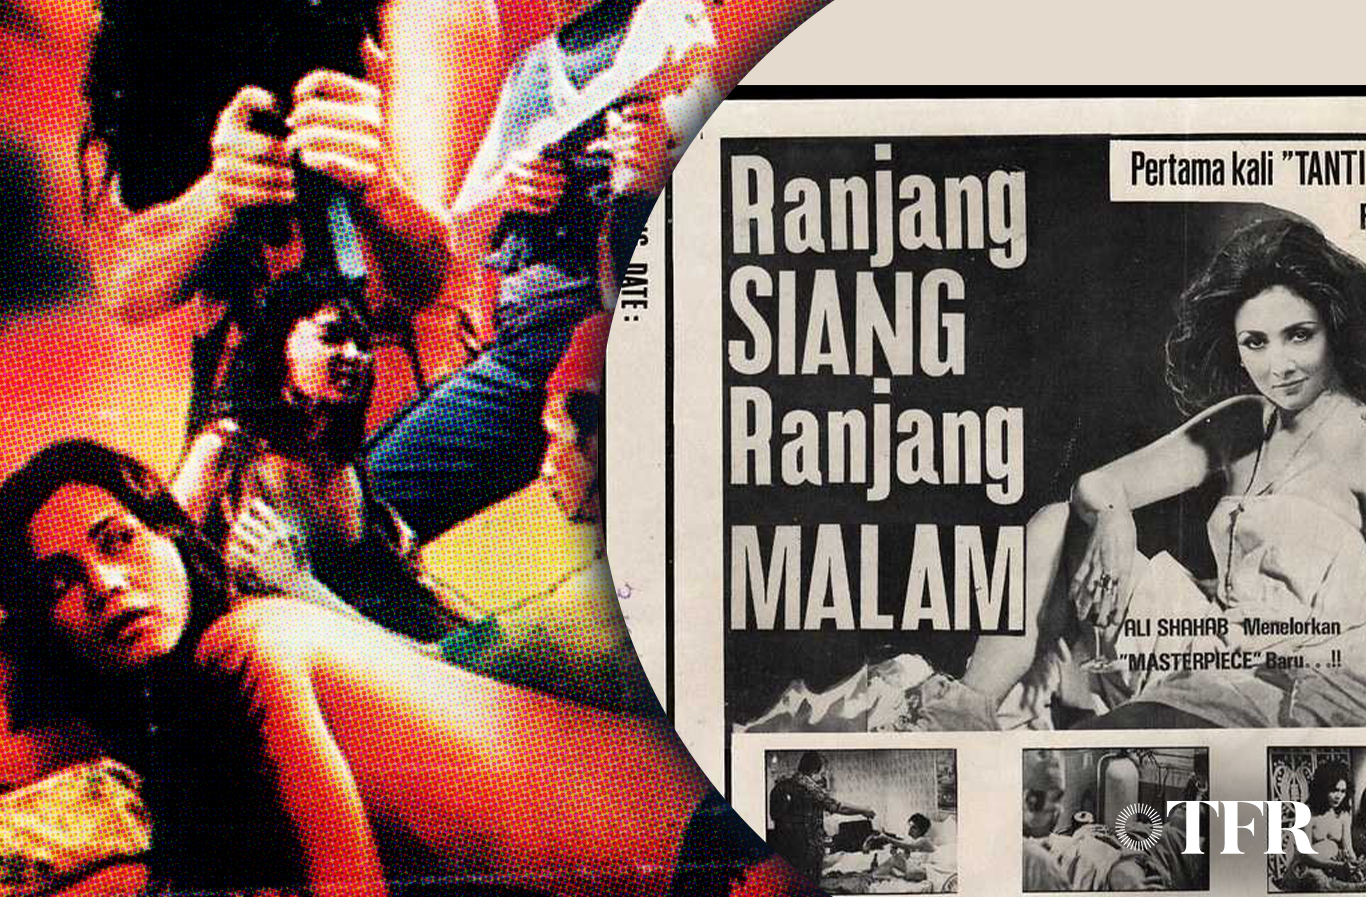 1980s Porn Captions - Bernafas dalam lumpurâ€: behind Indonesian soft porn movies in the 70s-80s â€”  TFR